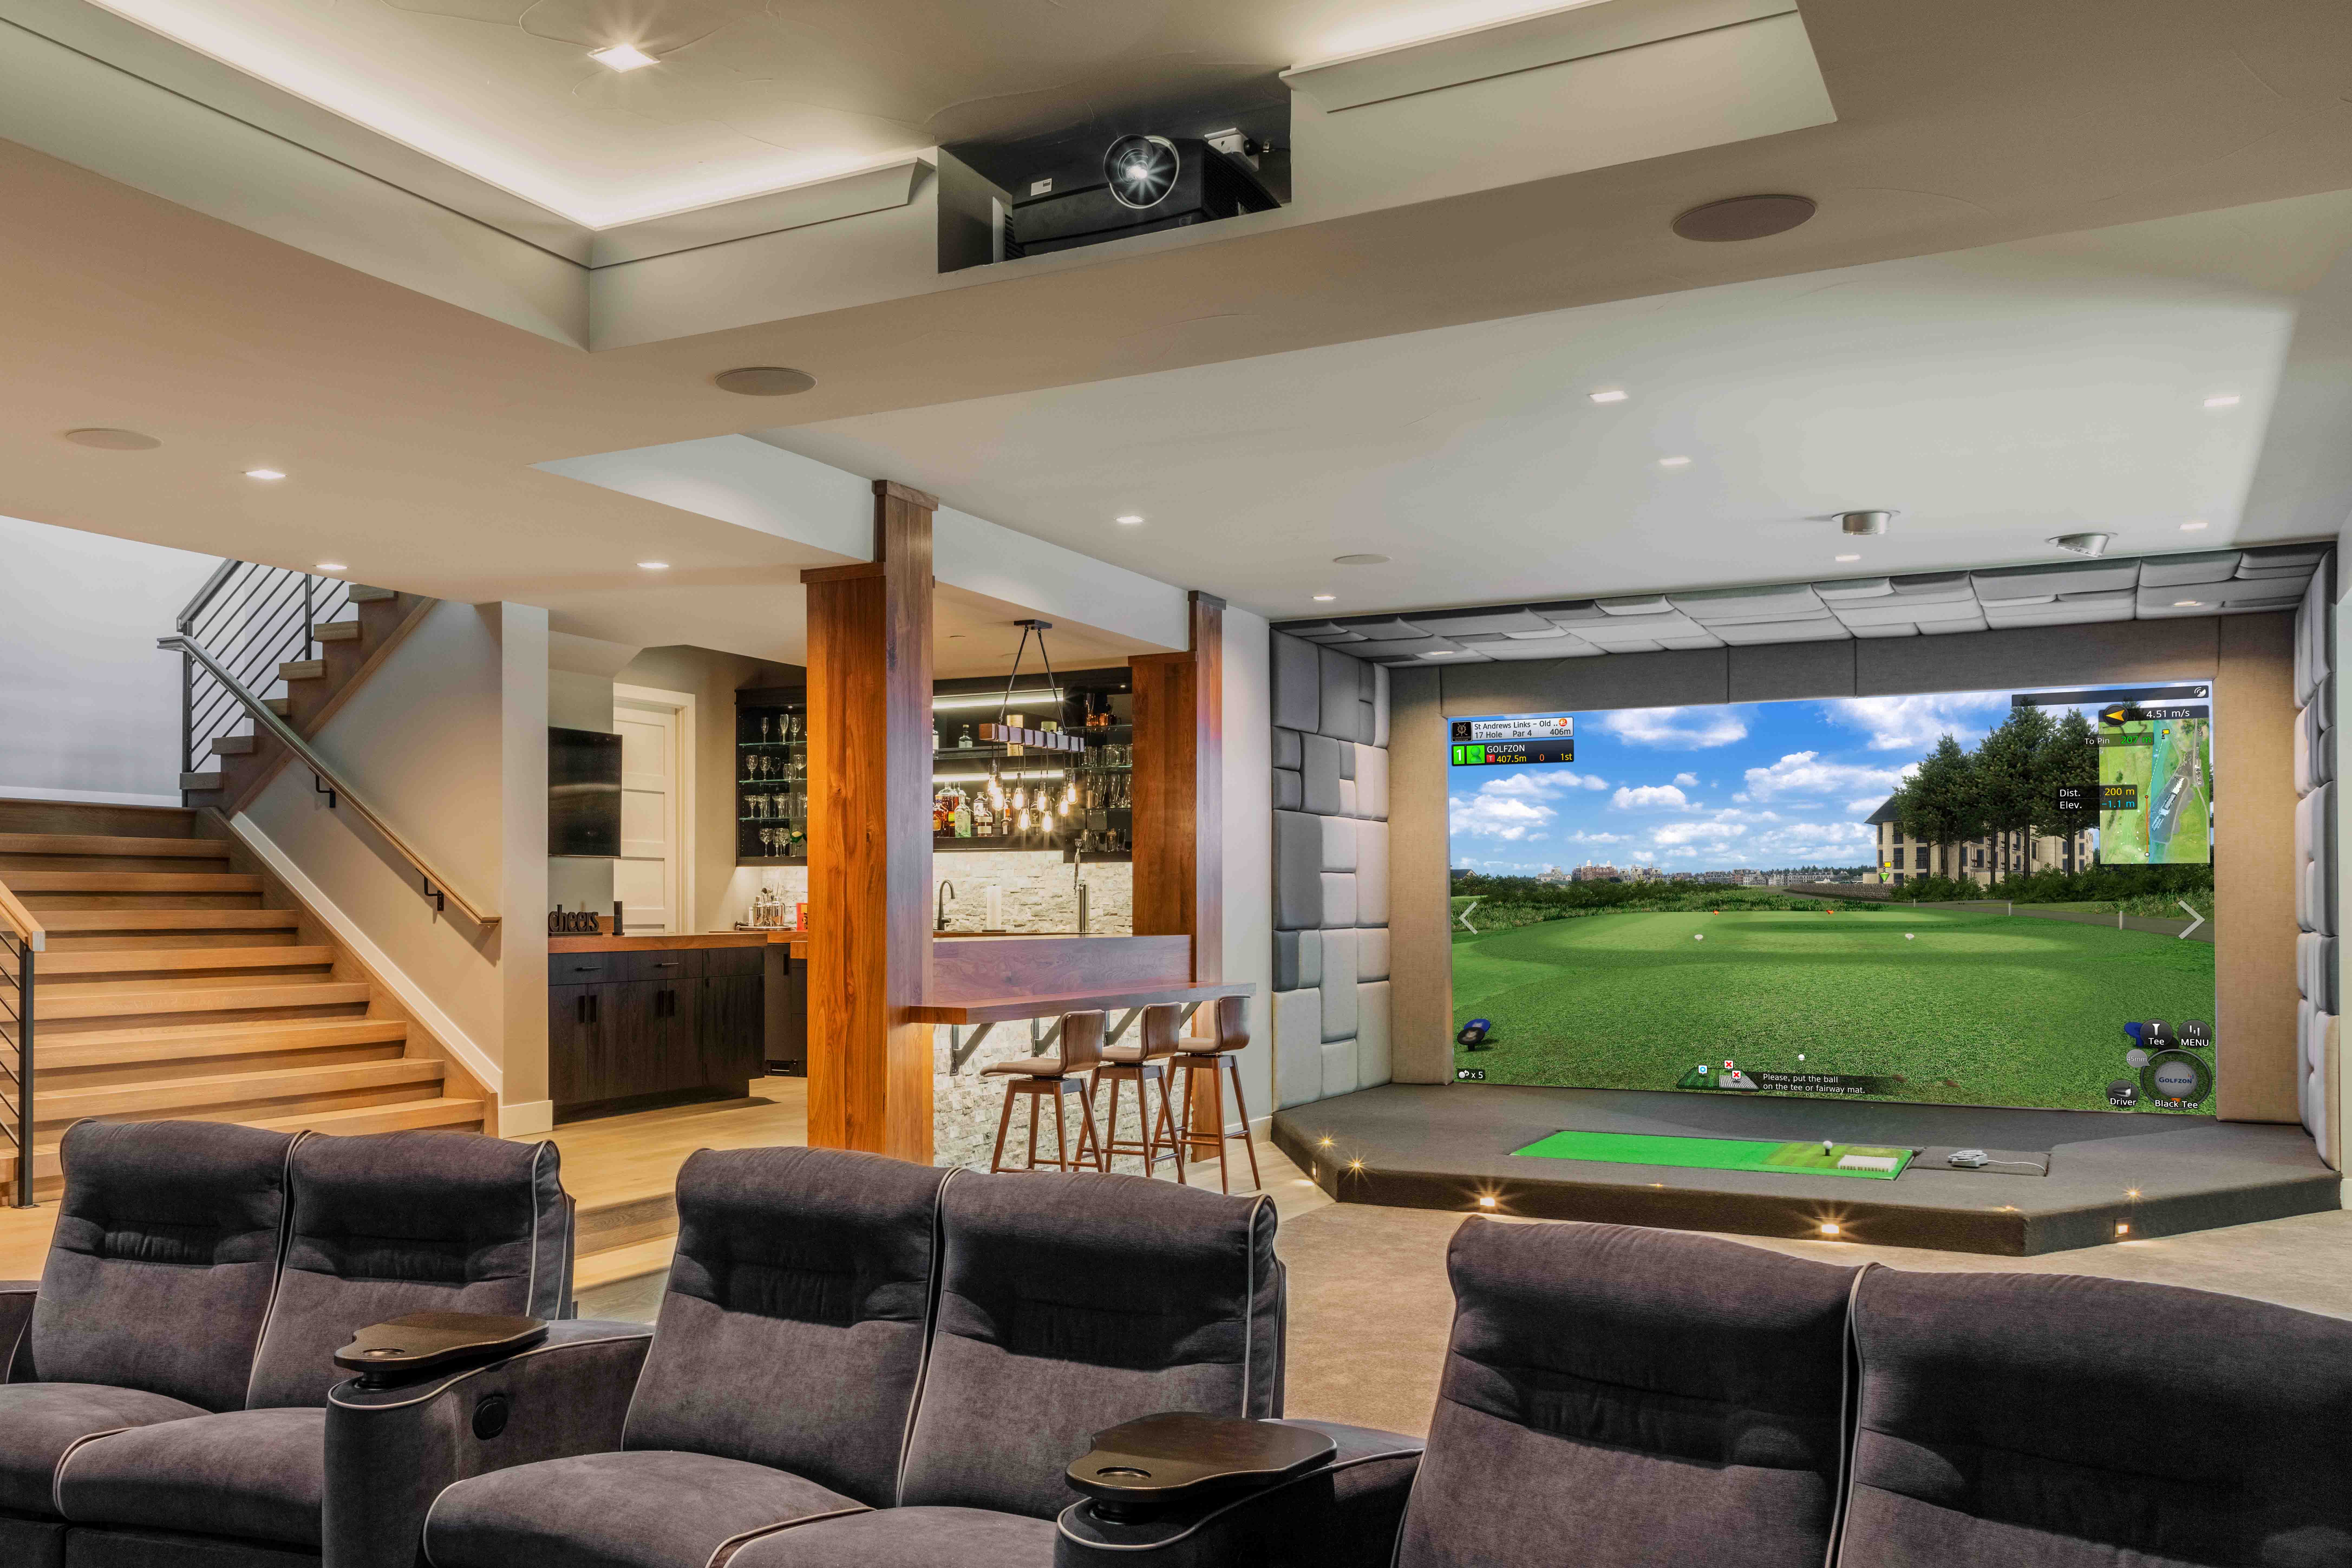 Golfzon simulator setup inside a home for design ideas